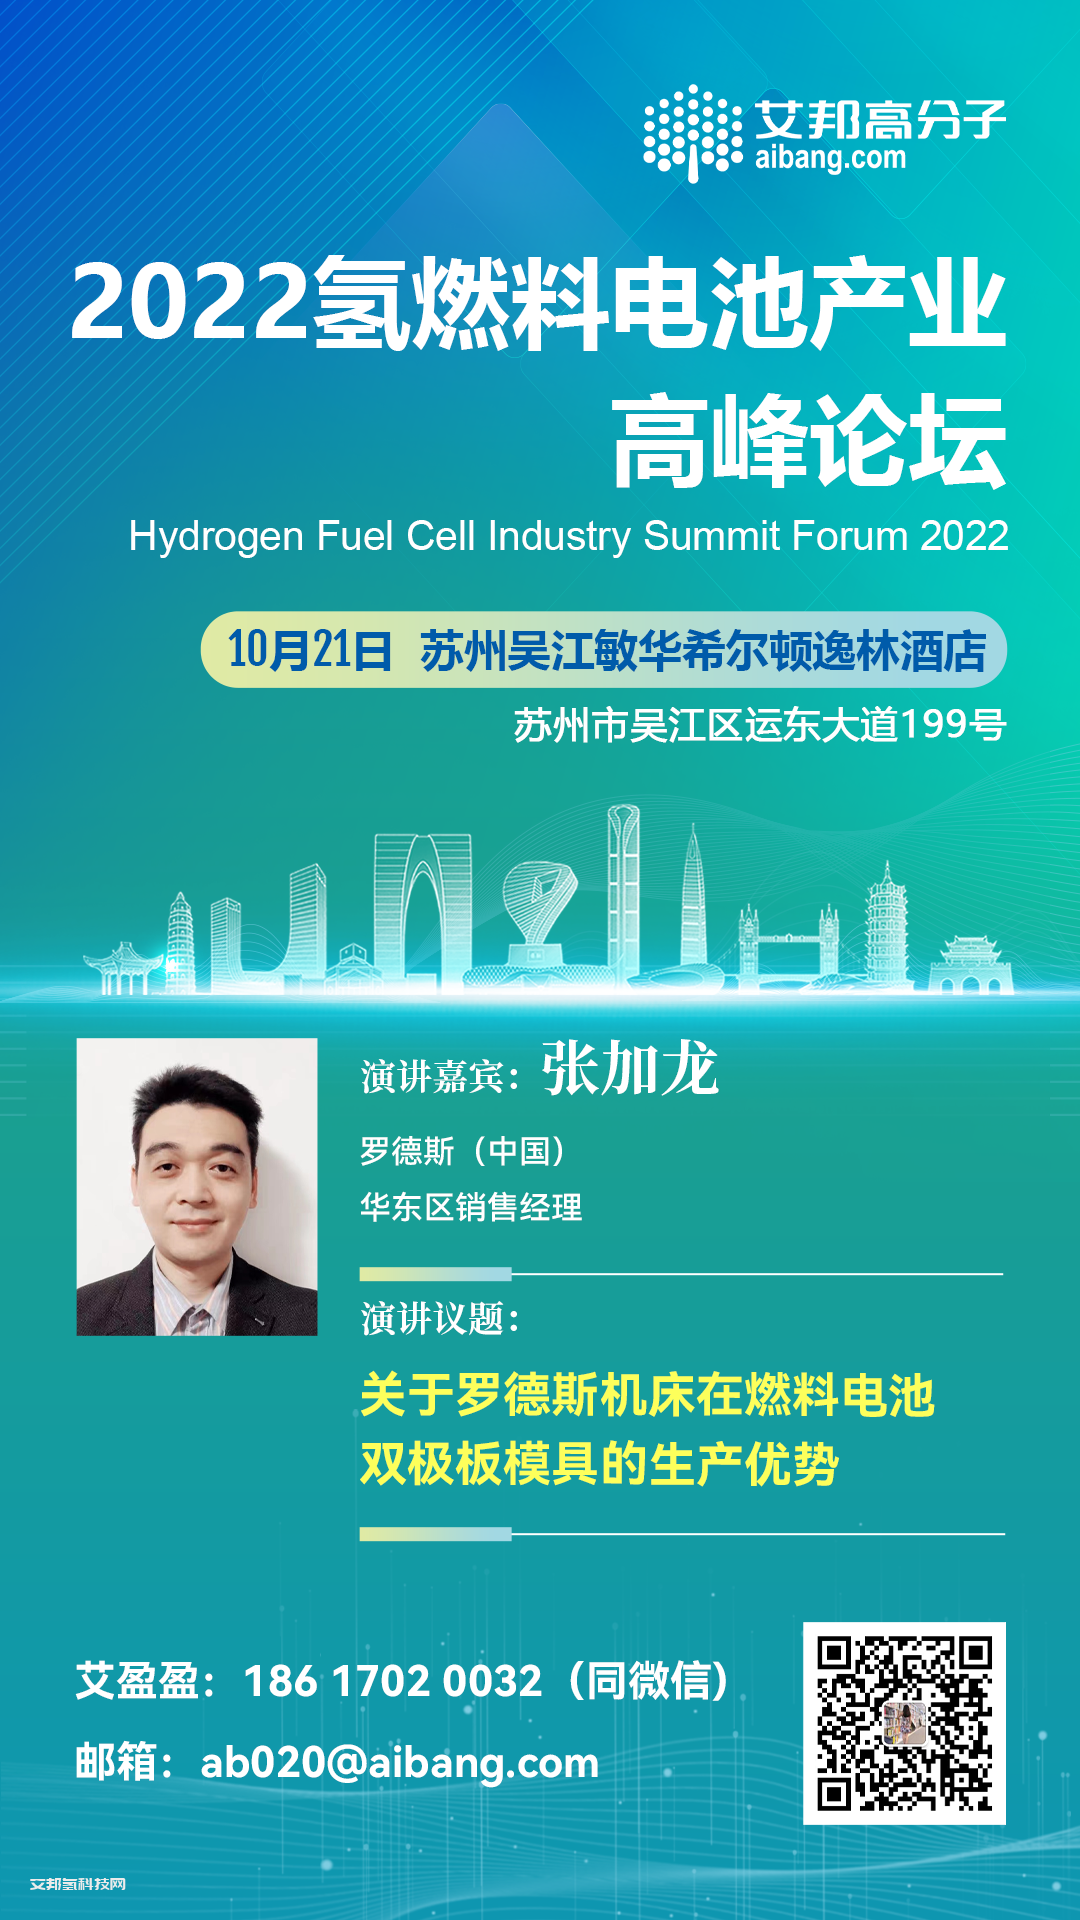 罗德斯将出席氢燃料电池产业链高峰论坛并做主题演讲